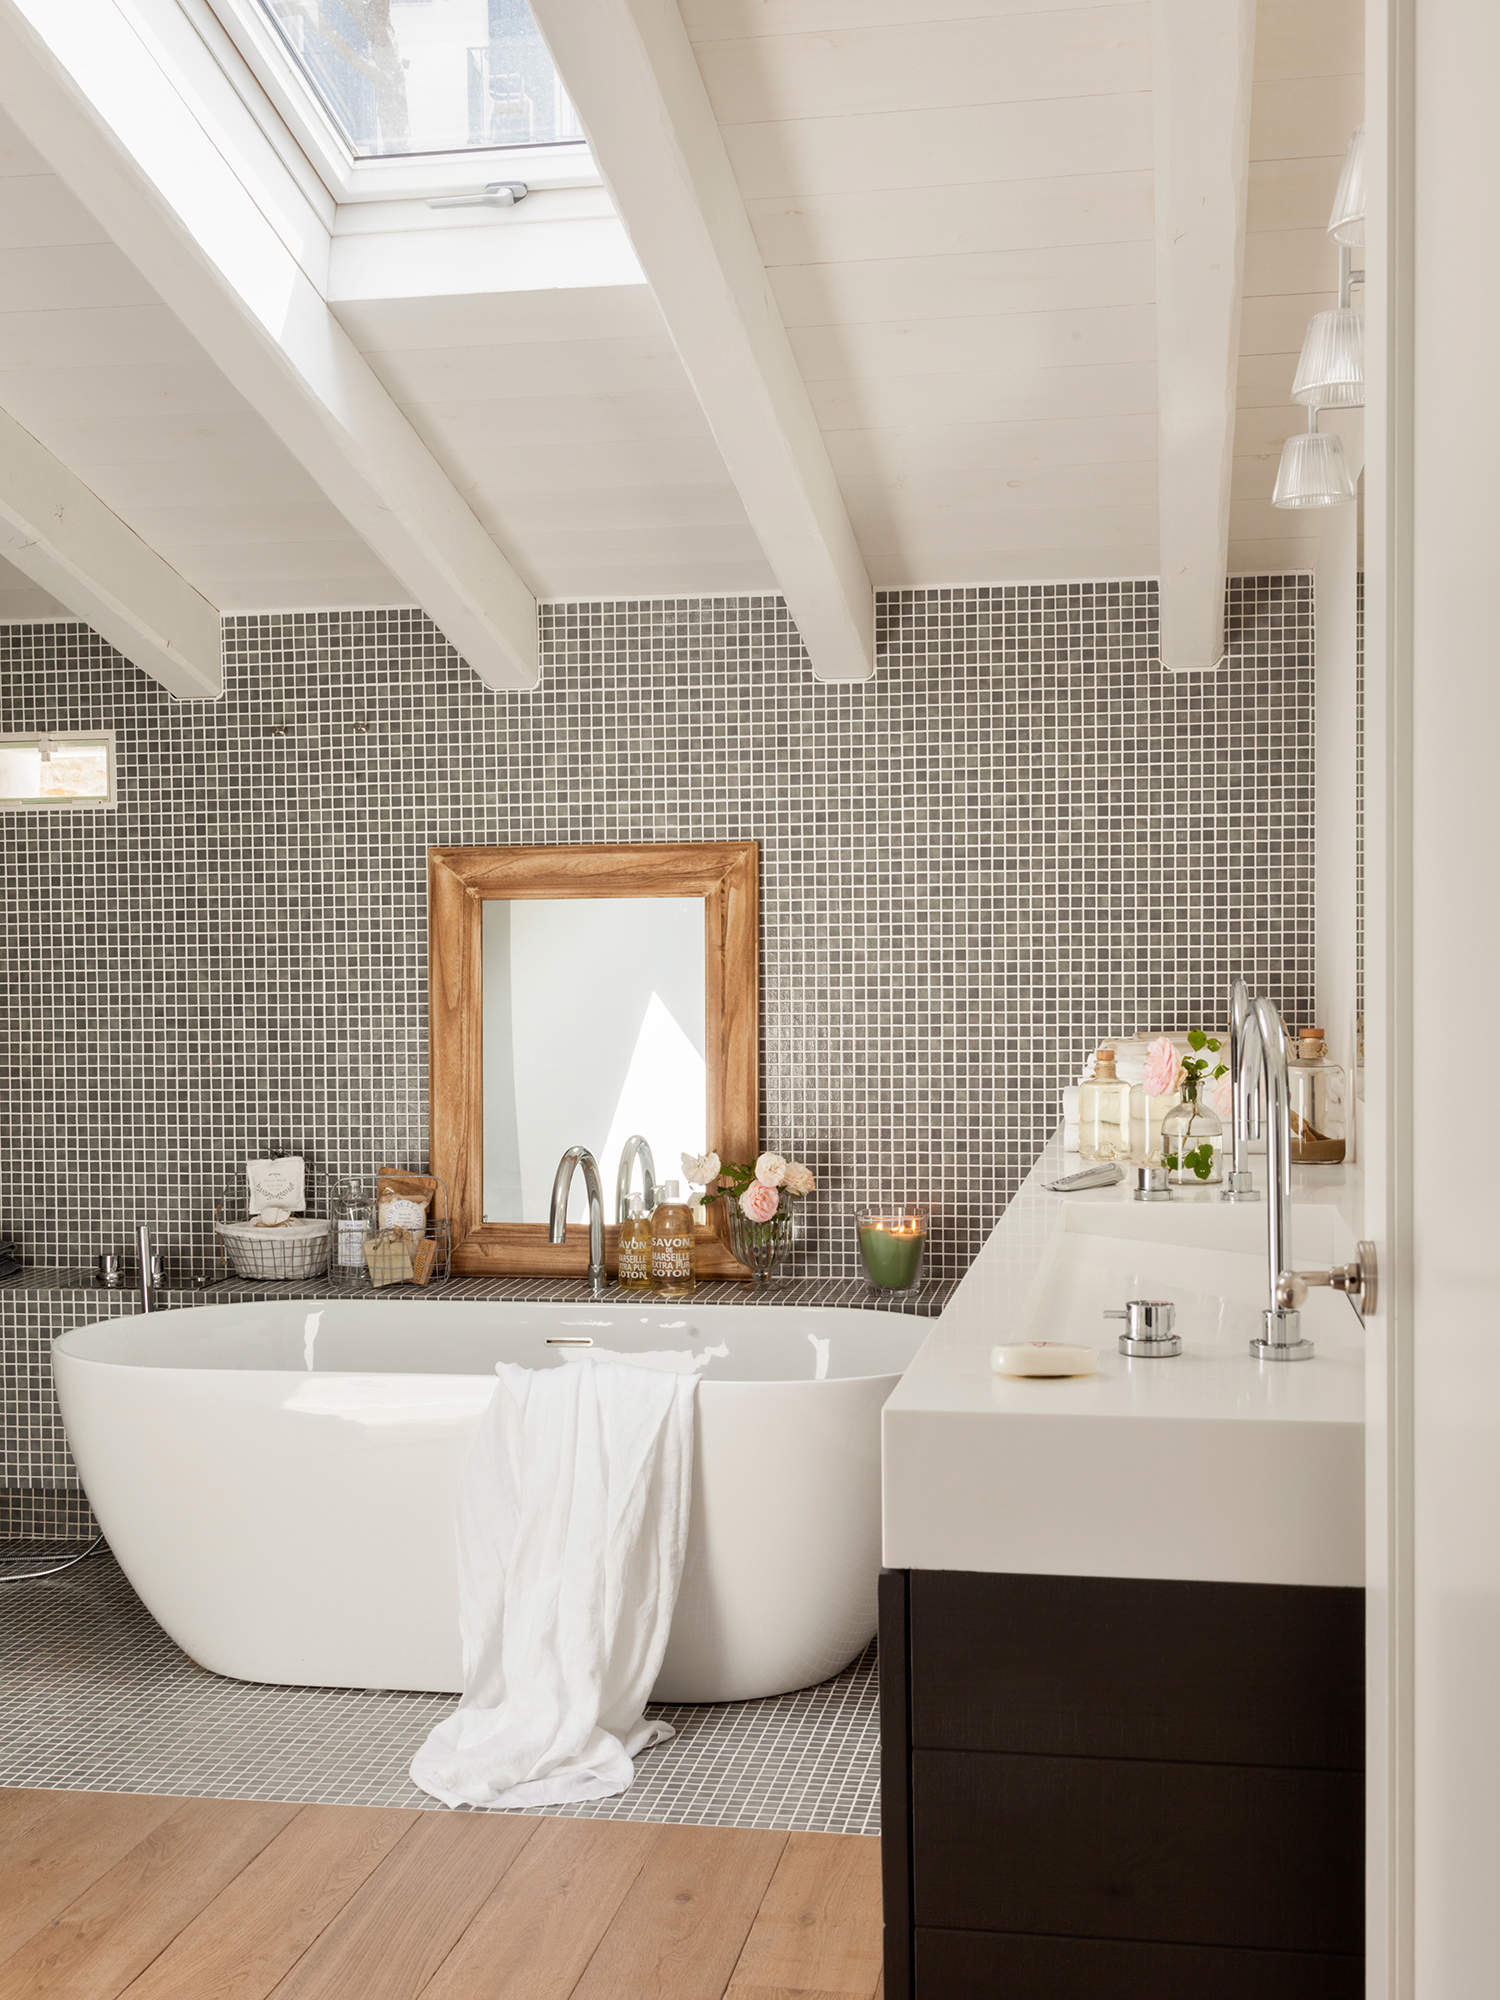 Baño en buhardilla con bañera exenta y pared de gresite gris_ 00435427